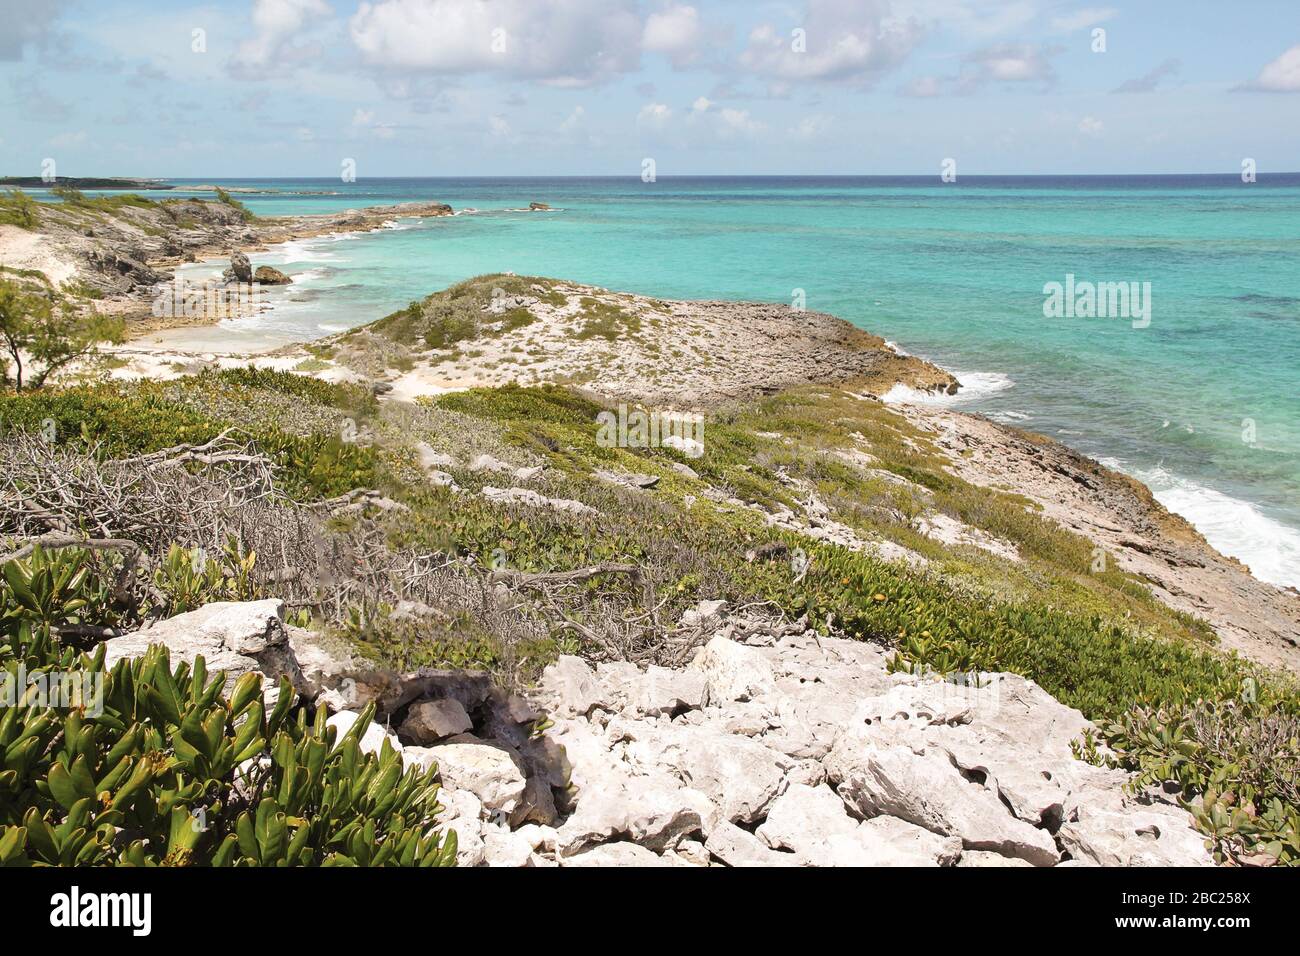 Vista increíble de las aguas turquesas del océano Atlántico y cielo azul con nubes blancas. Bahamas. Hermoso fondo natural. Foto de stock